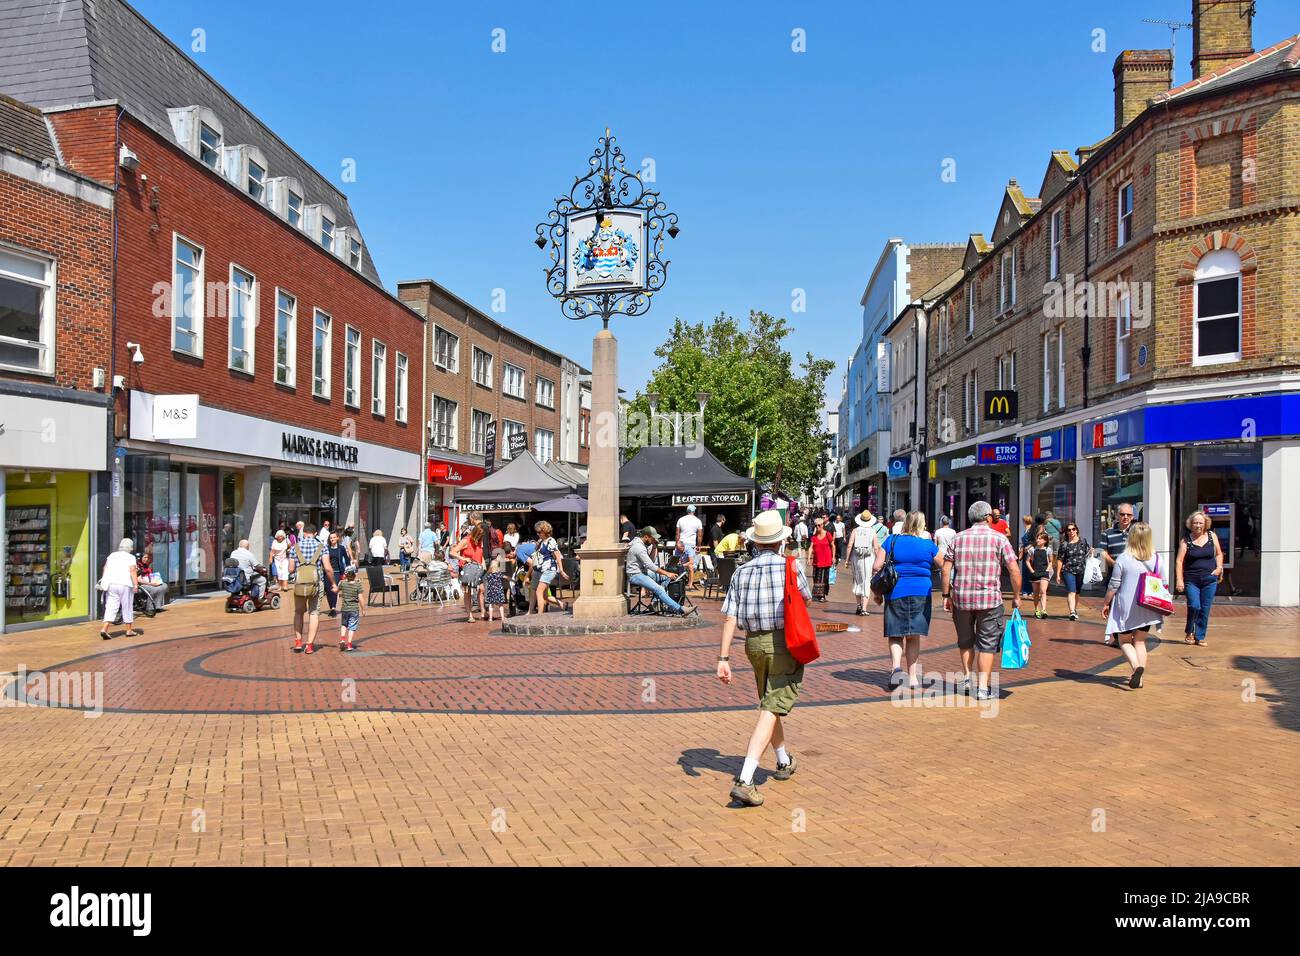 Ville de Chelmsford Essex County Town signe avec des armoiries bleu ciel jour d'été pour les gens qui font des courses dans la rue piétonne pavée animée haute rue Angleterre Royaume-Uni Banque D'Images